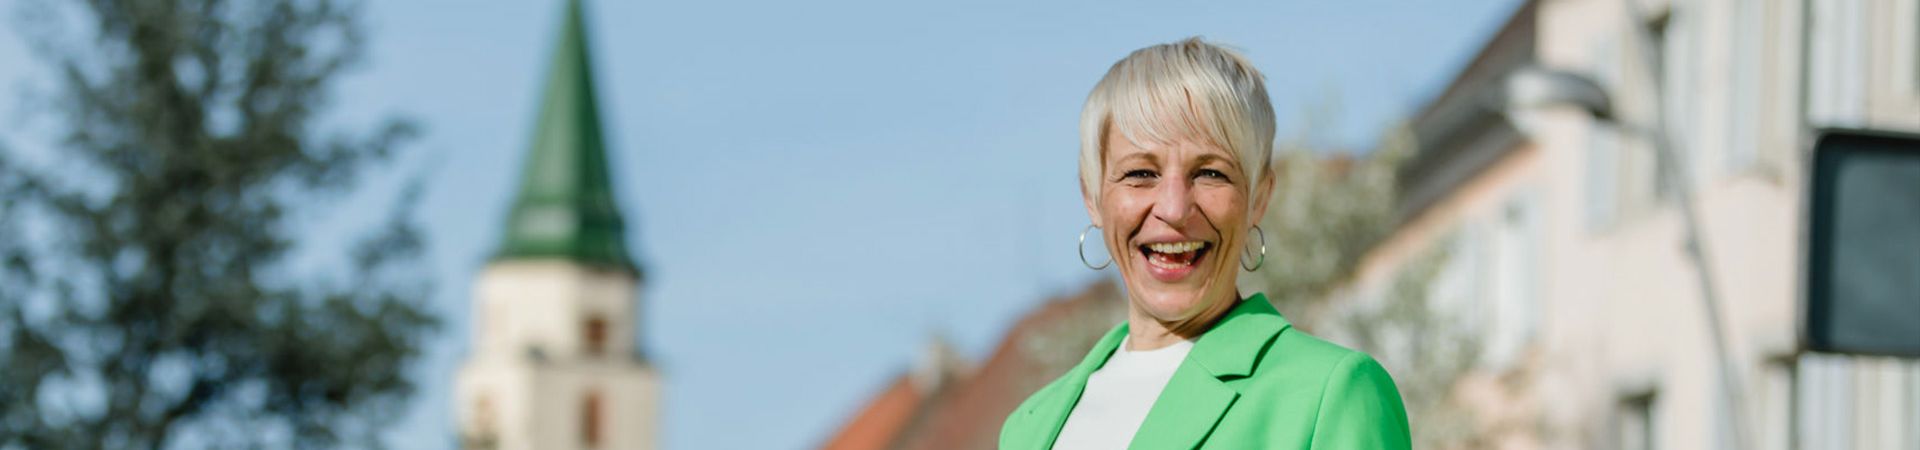 Christina Meckes  - Bürgermeisterin für Hüfingen